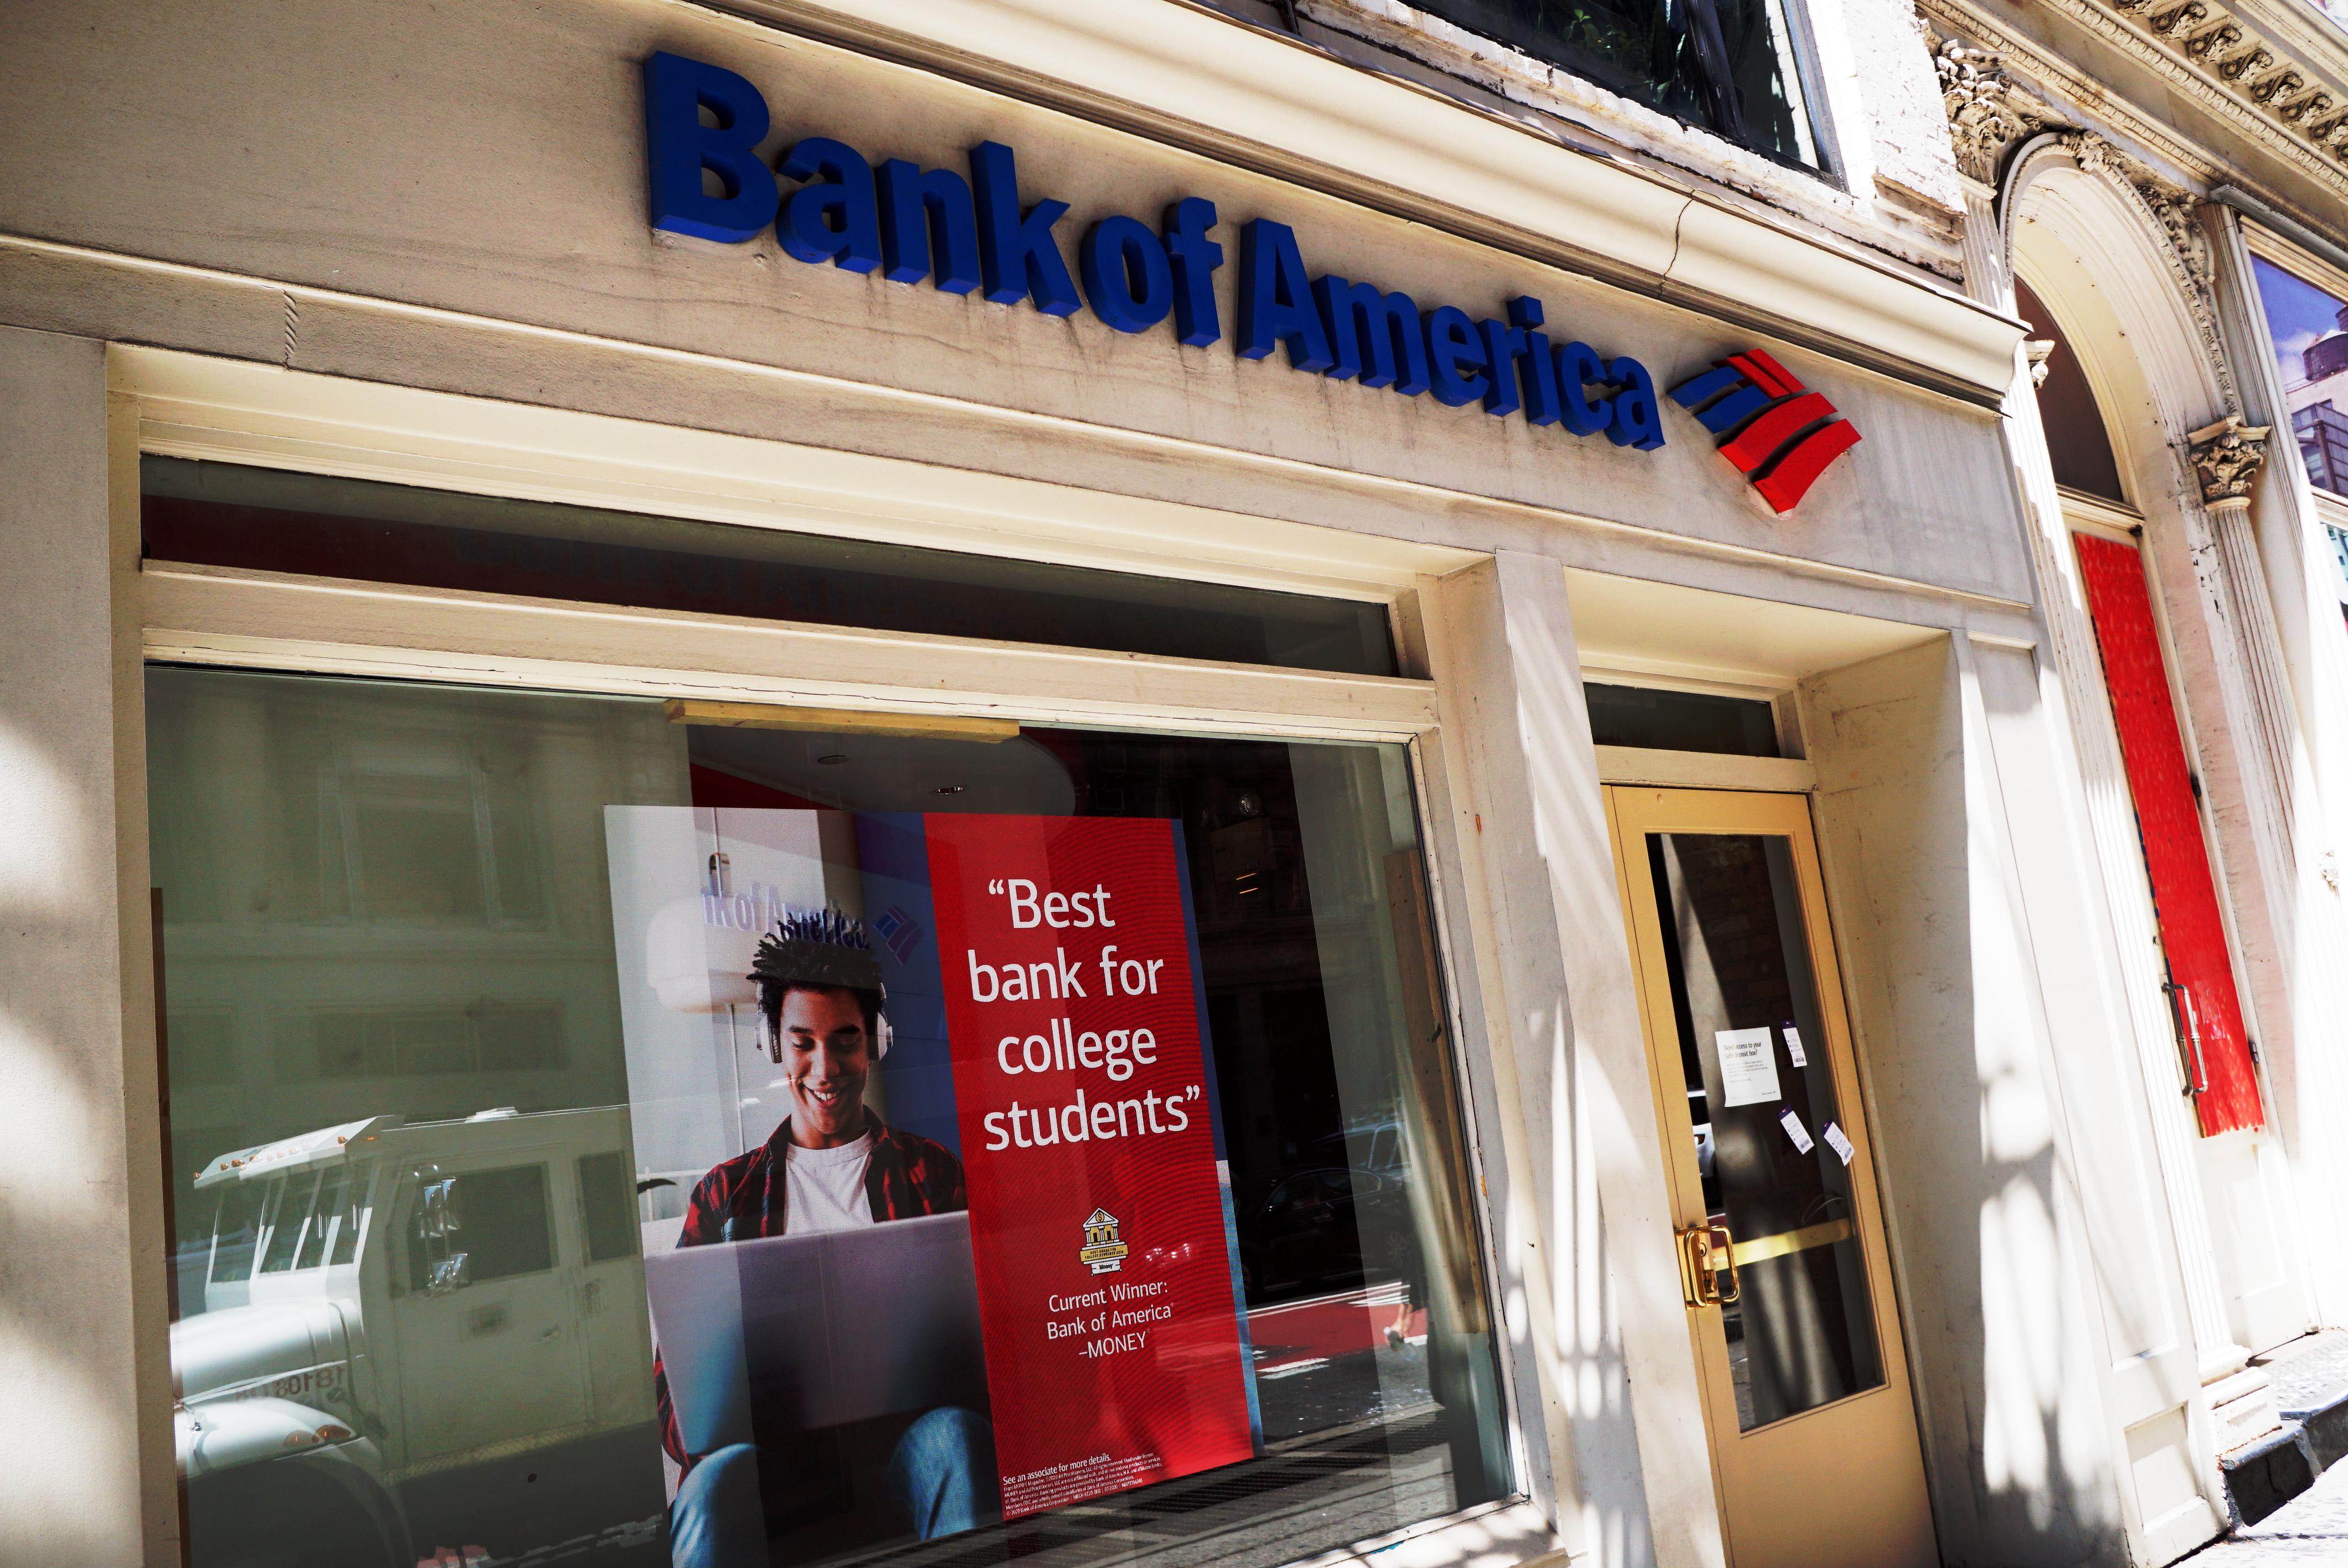 Клиент американского банка по ошибке получил более двух миллиардов долларов